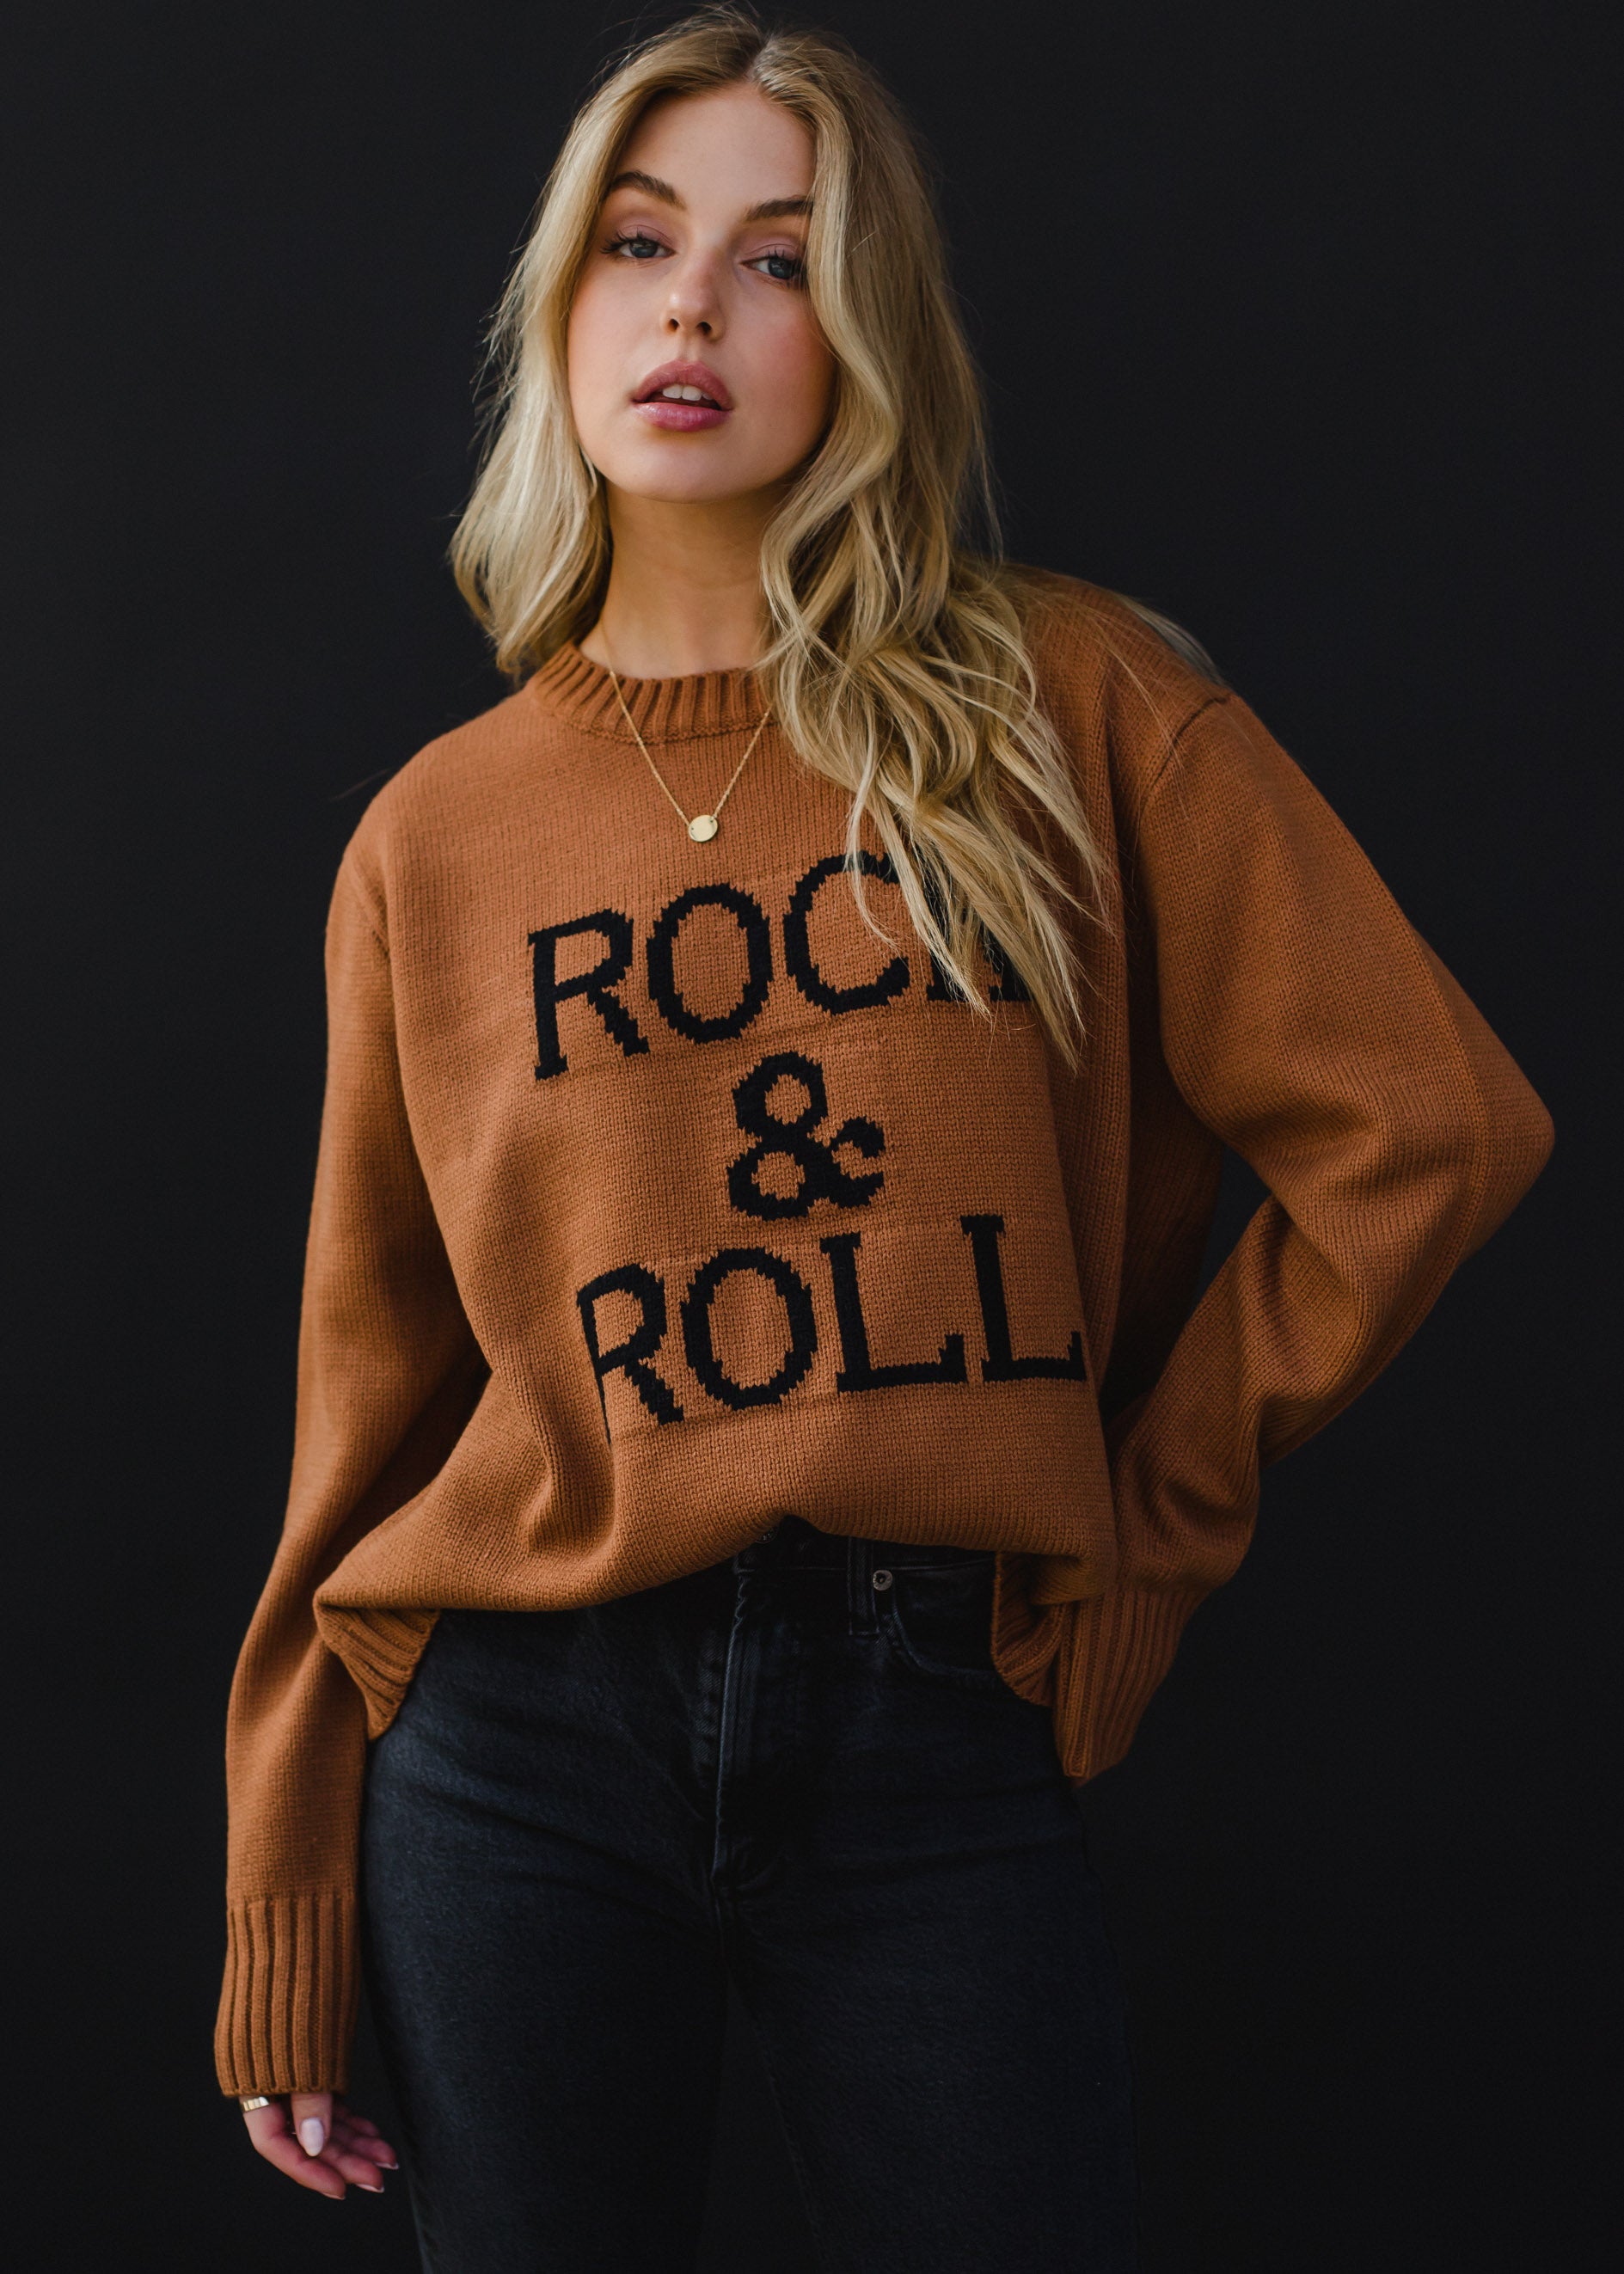 Rock & Roll Sweater in Caramel & Black